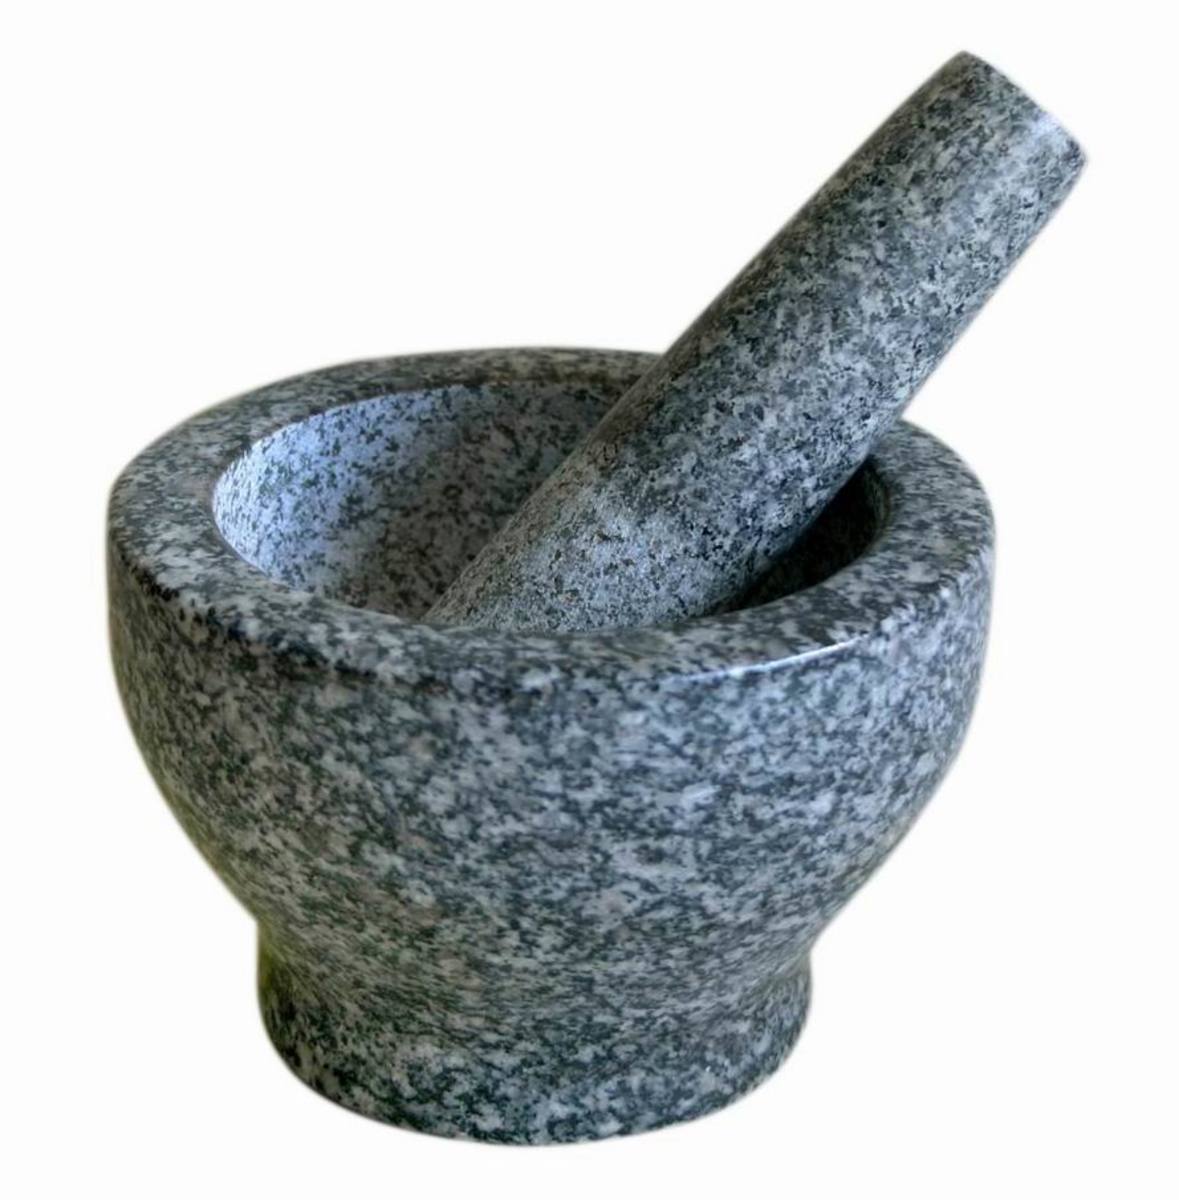 a simple granite mortar and pestel